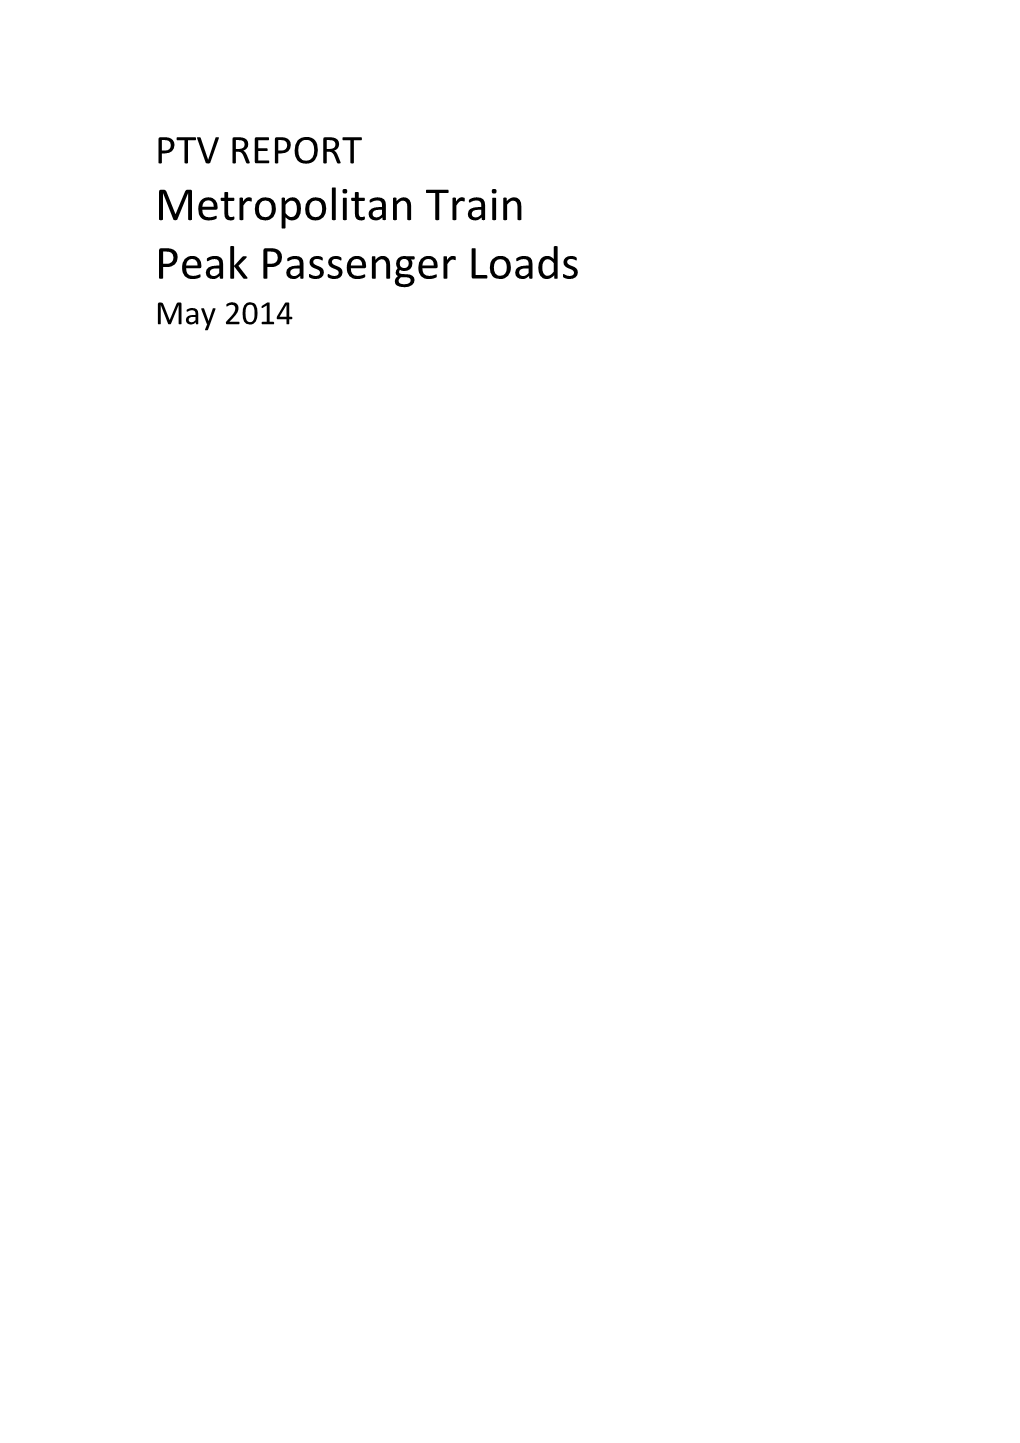 Metropolitan Train Peak Passenger Loads May 2014